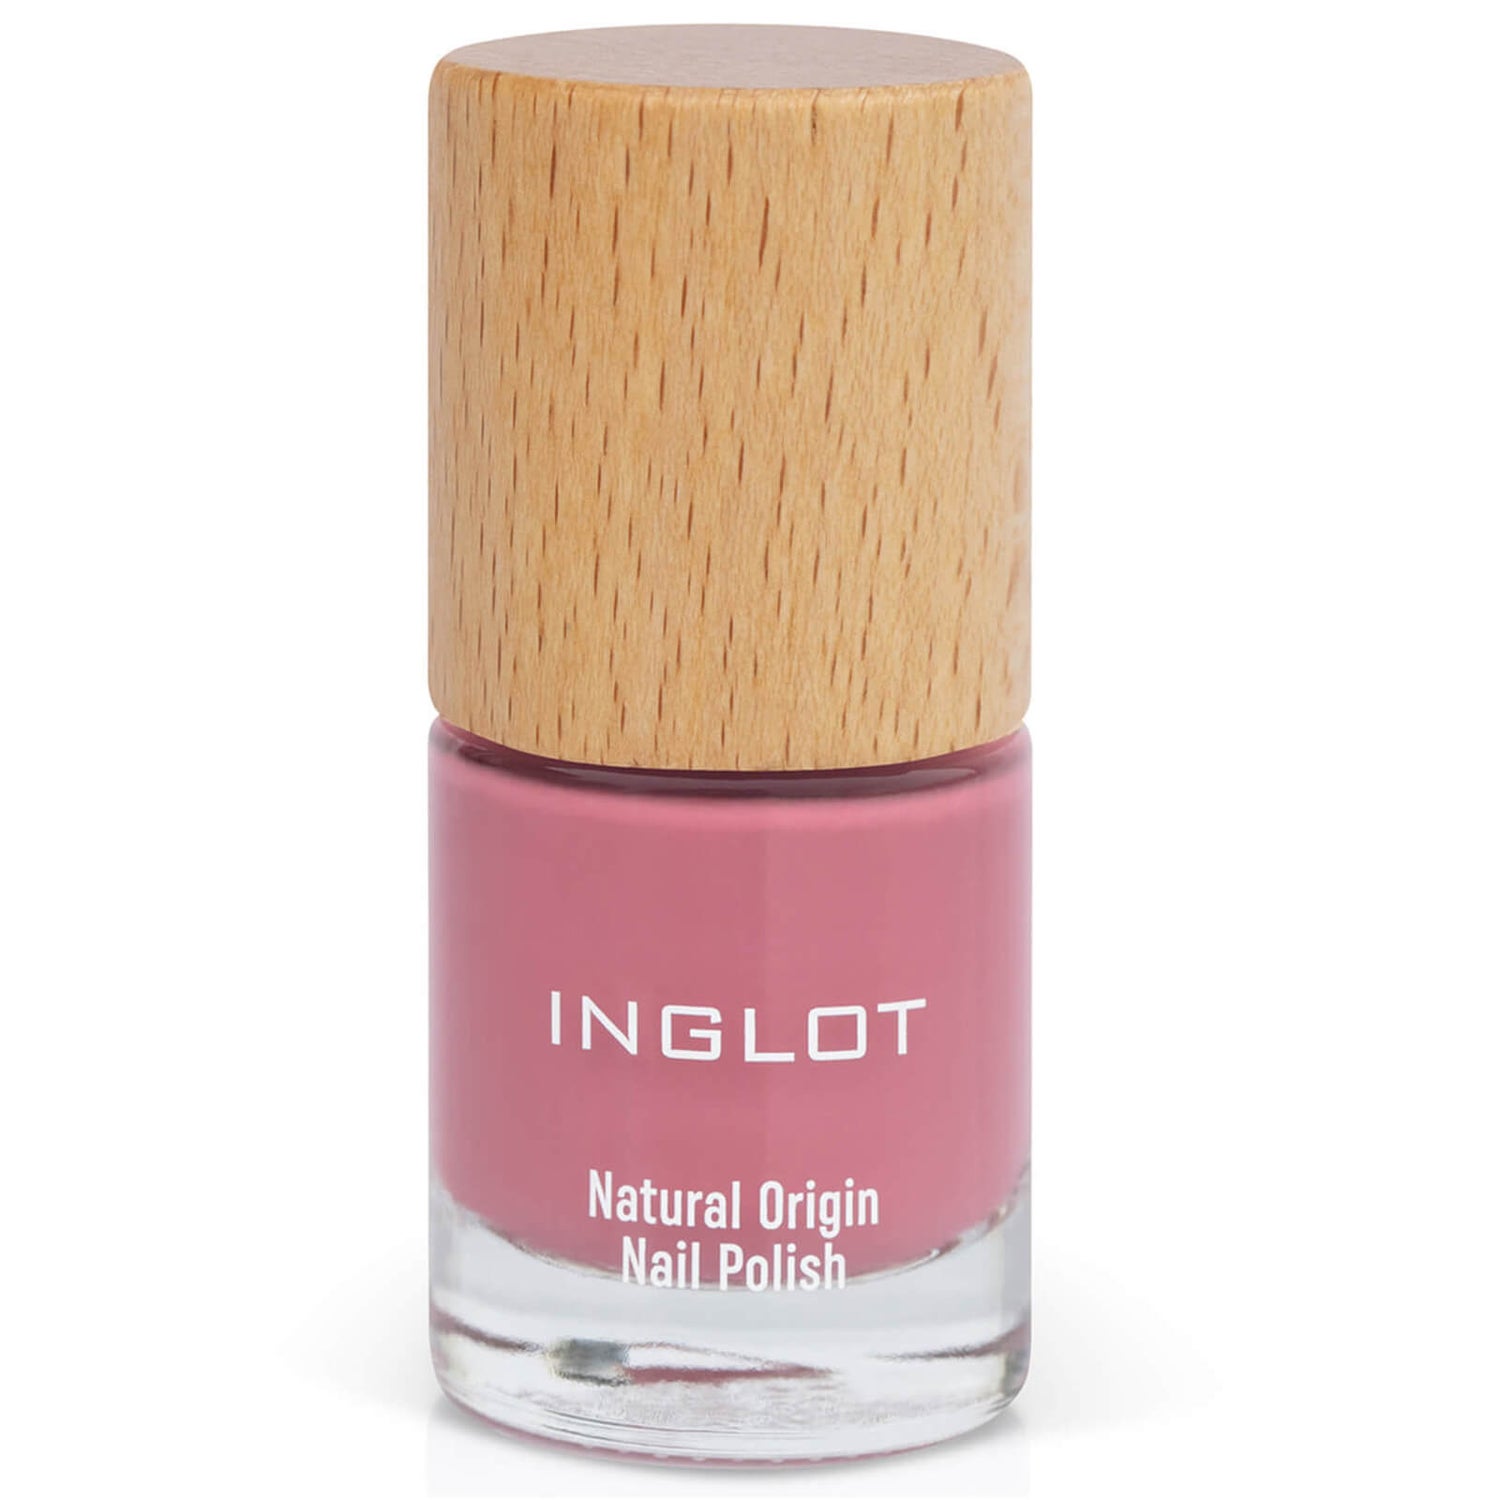 Inglot Natural Origin Nail Polish - Follow Dreams 007